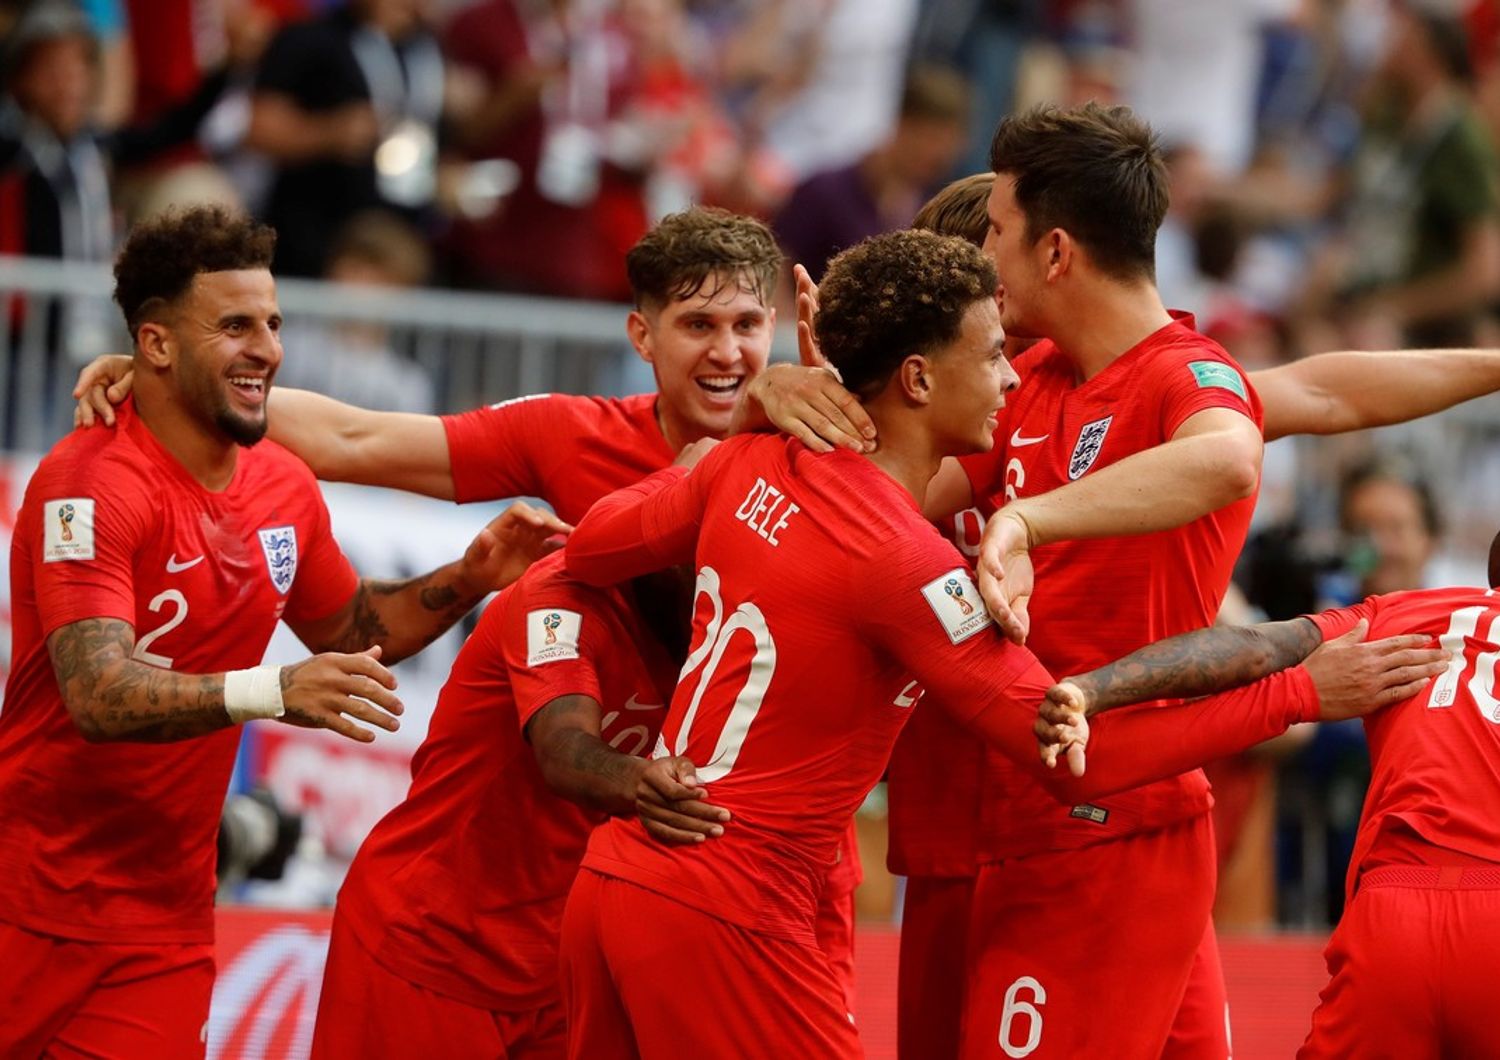 Mondiali: Inghilterra in semifinale, Svezia battuta 2-0